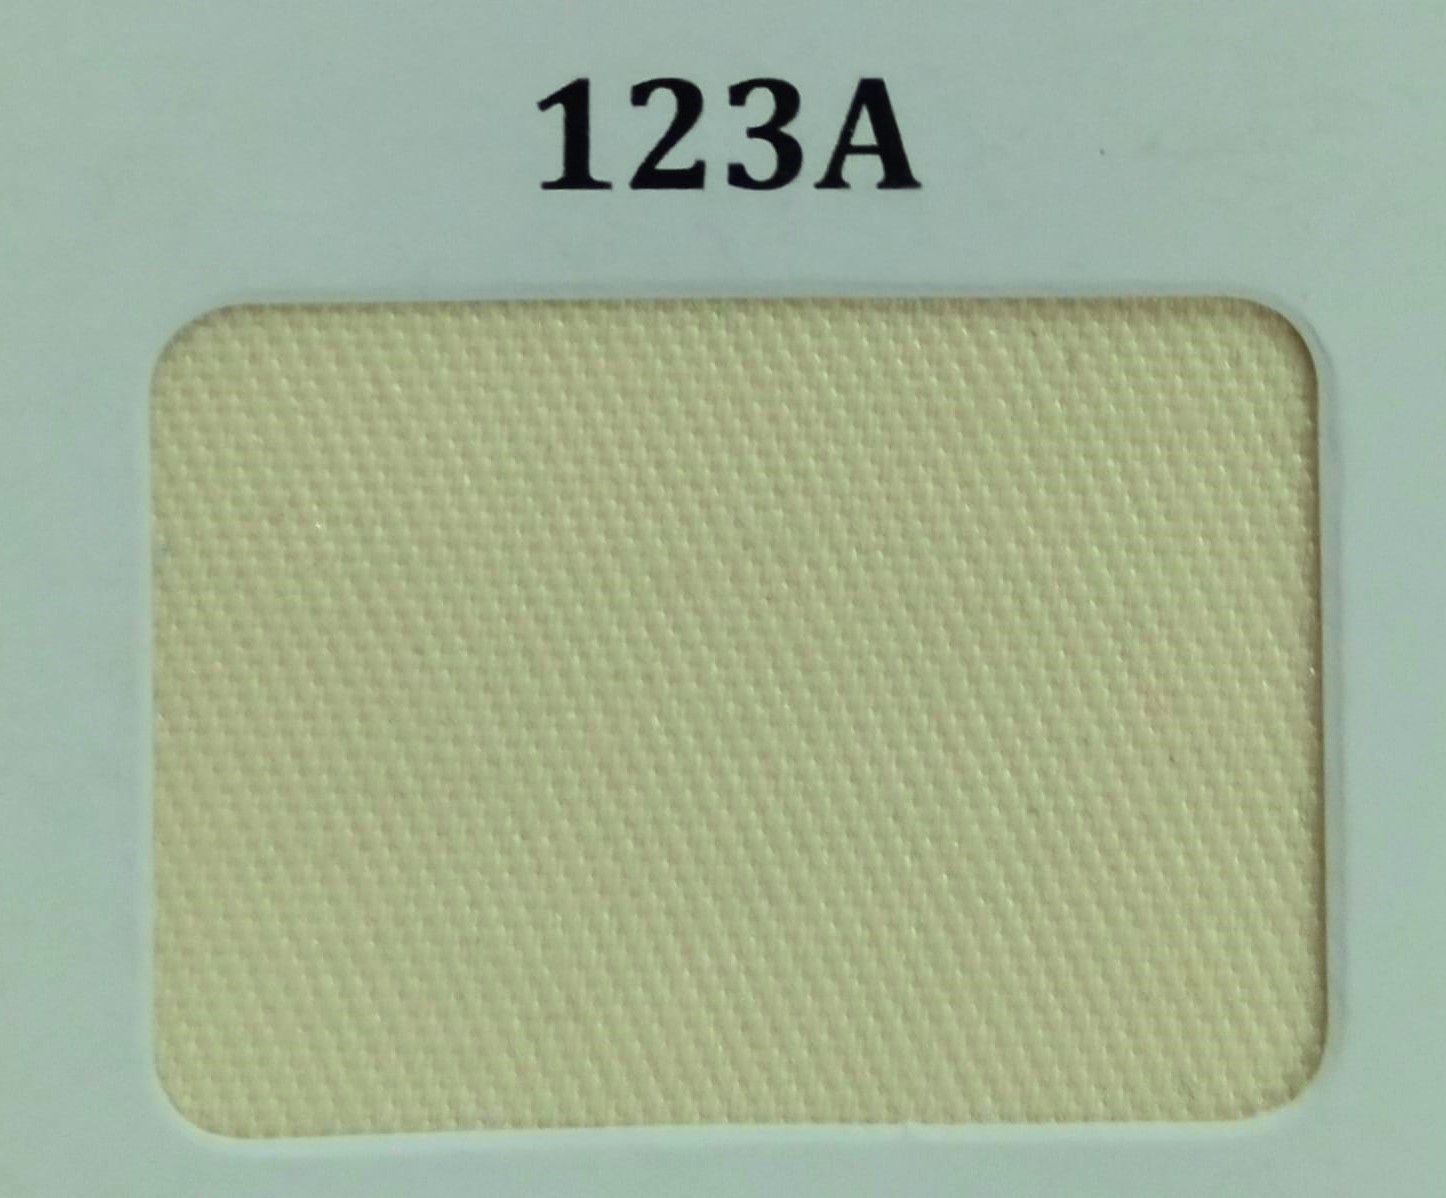 Gambar 1. Unione Kode 123A Warna Cream Part 1